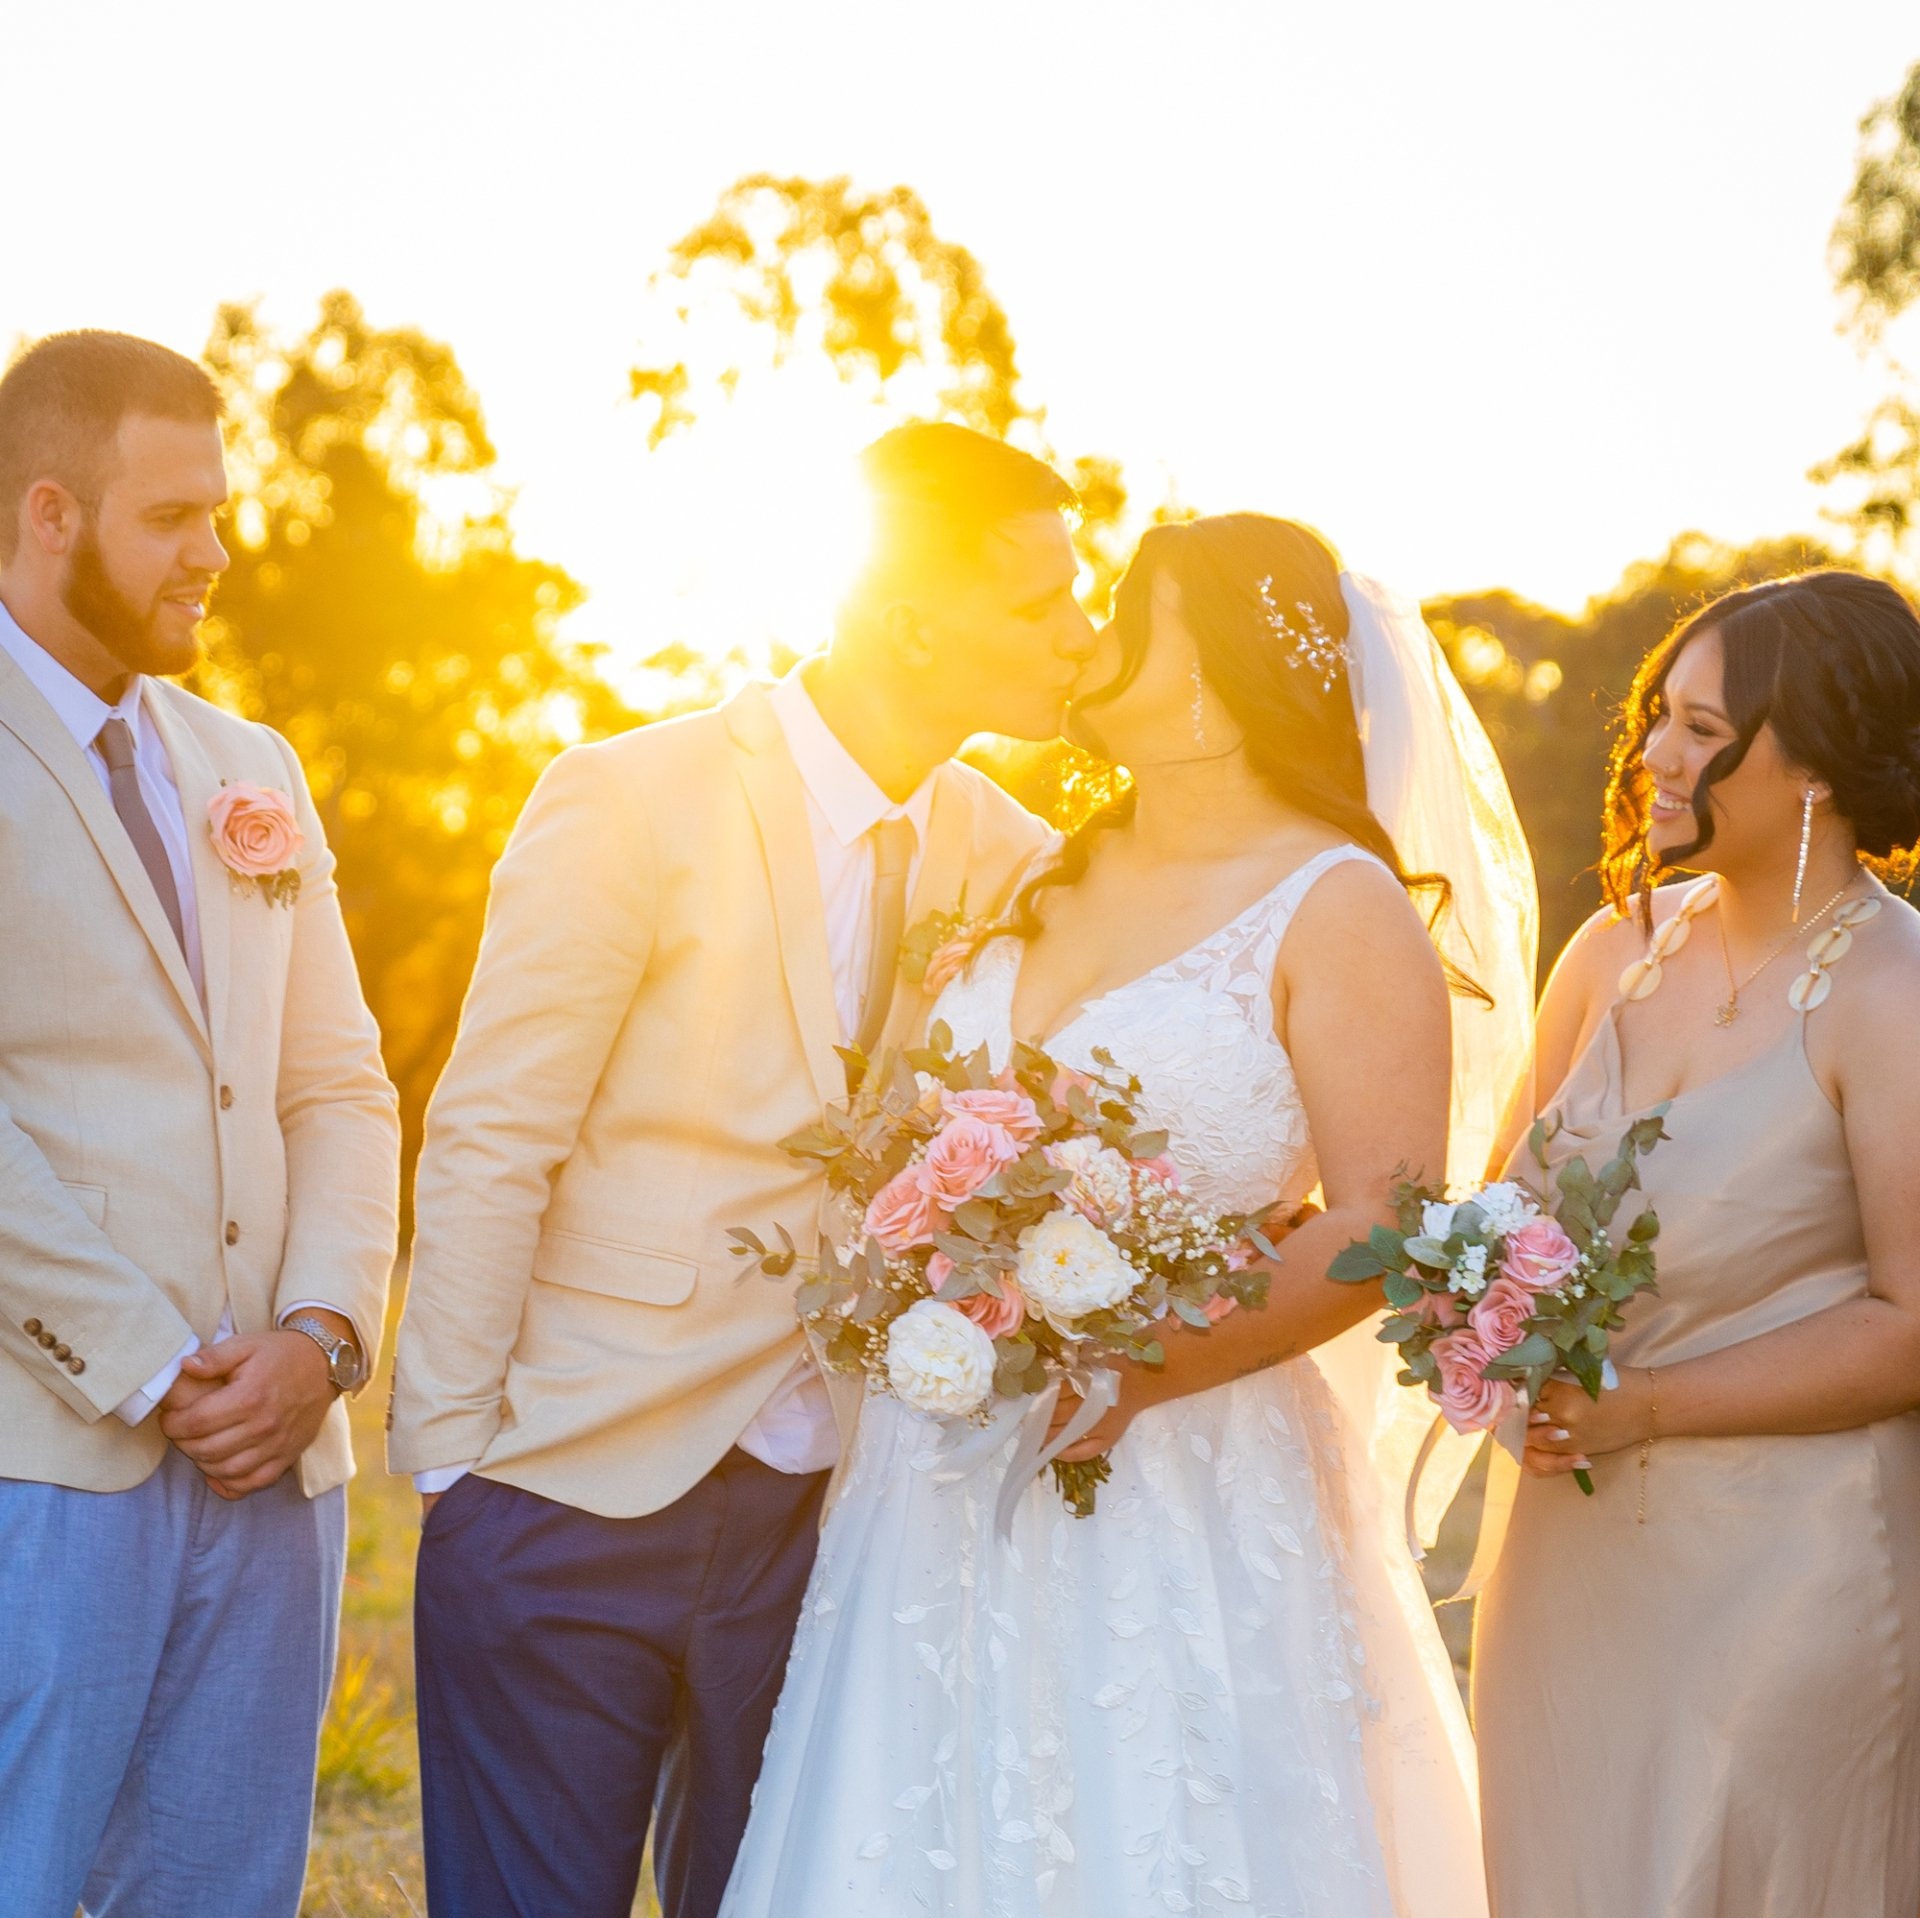 Sunset Photoshoot Wedding